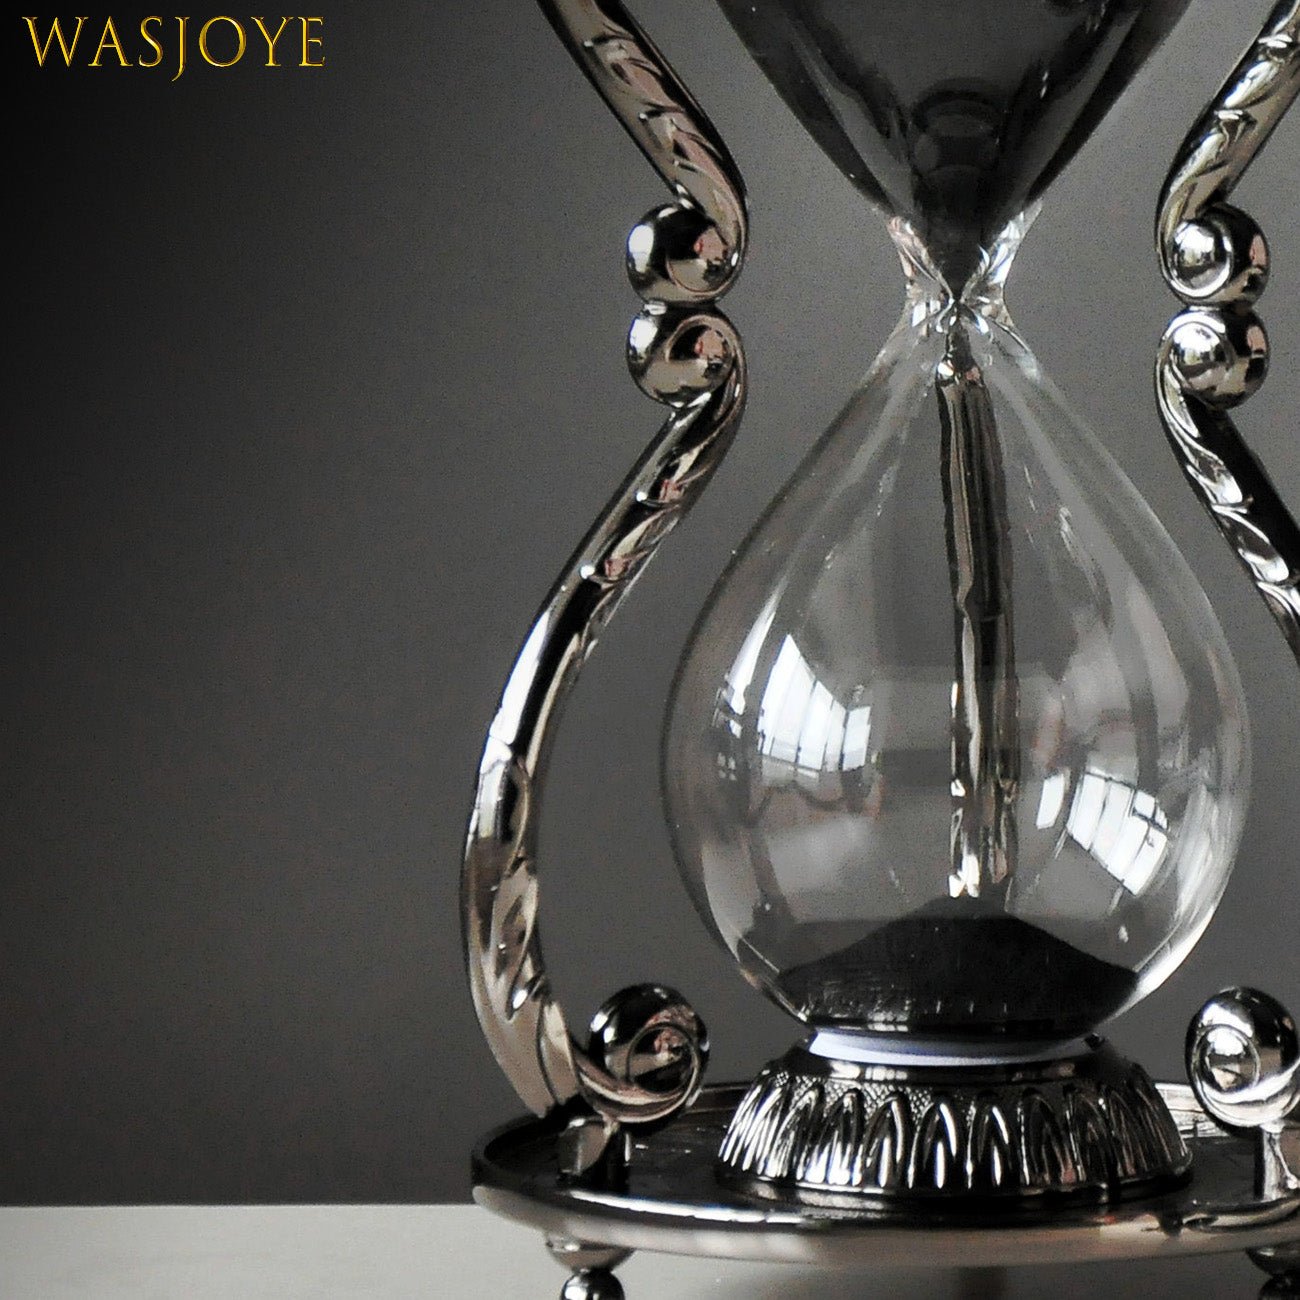 全4種類 要1種類選択 30分 星座 砂時計 アワーグラス 小物 装飾 アクセサリー 時計 タイマー インテリア オーナメント オブジェ